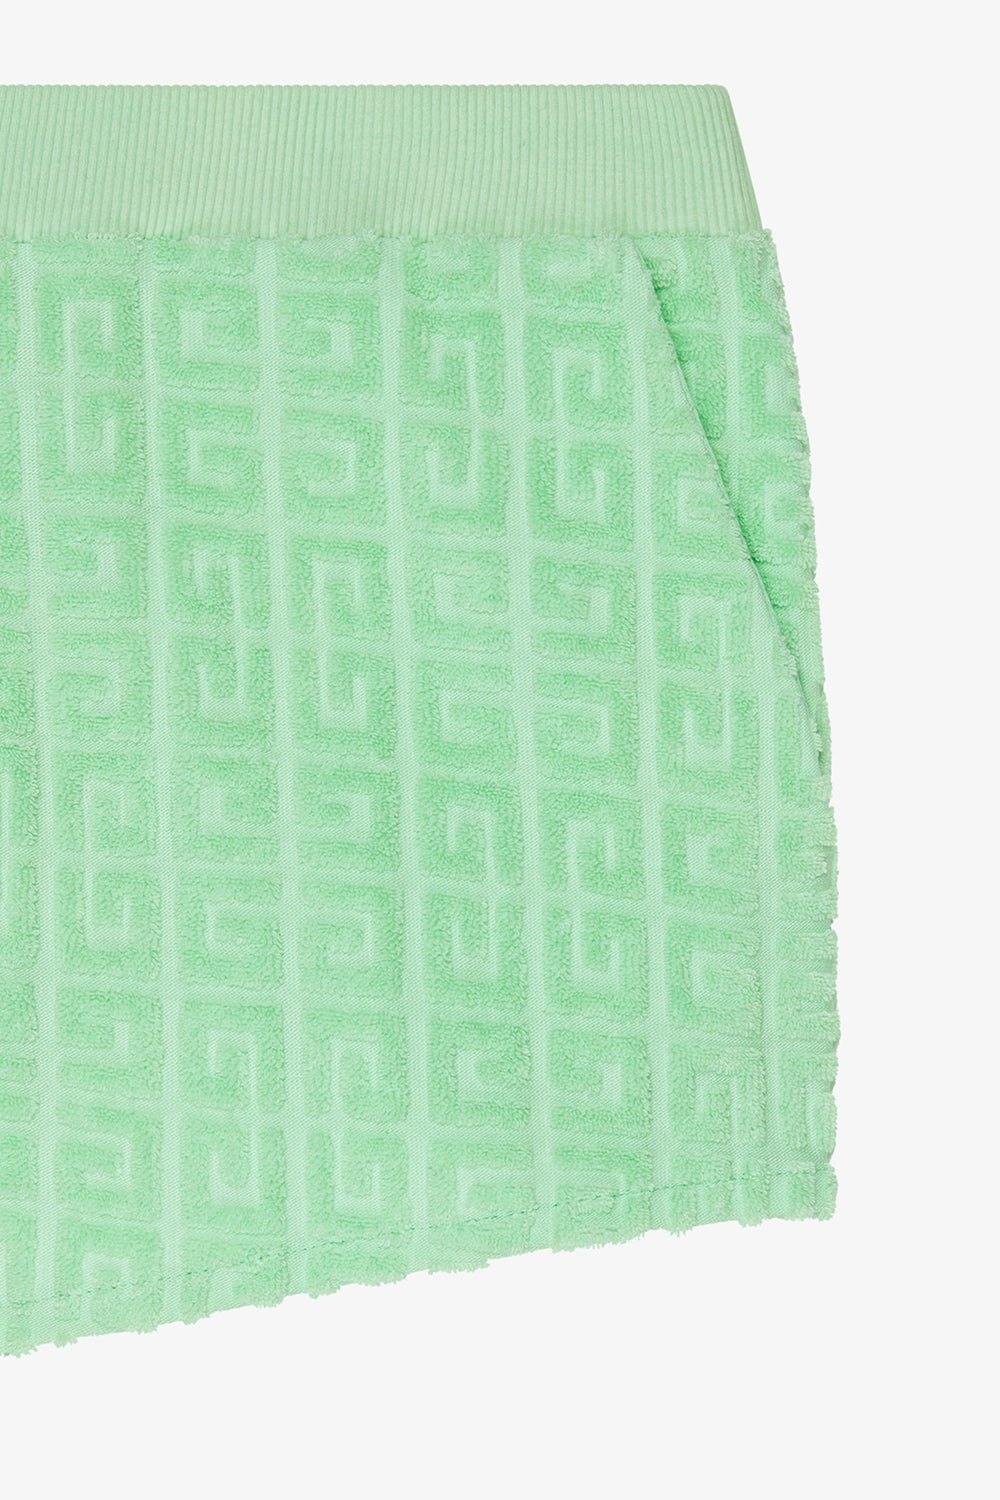 GIVENCHY-Toweling Shorts-AQUA GREEN